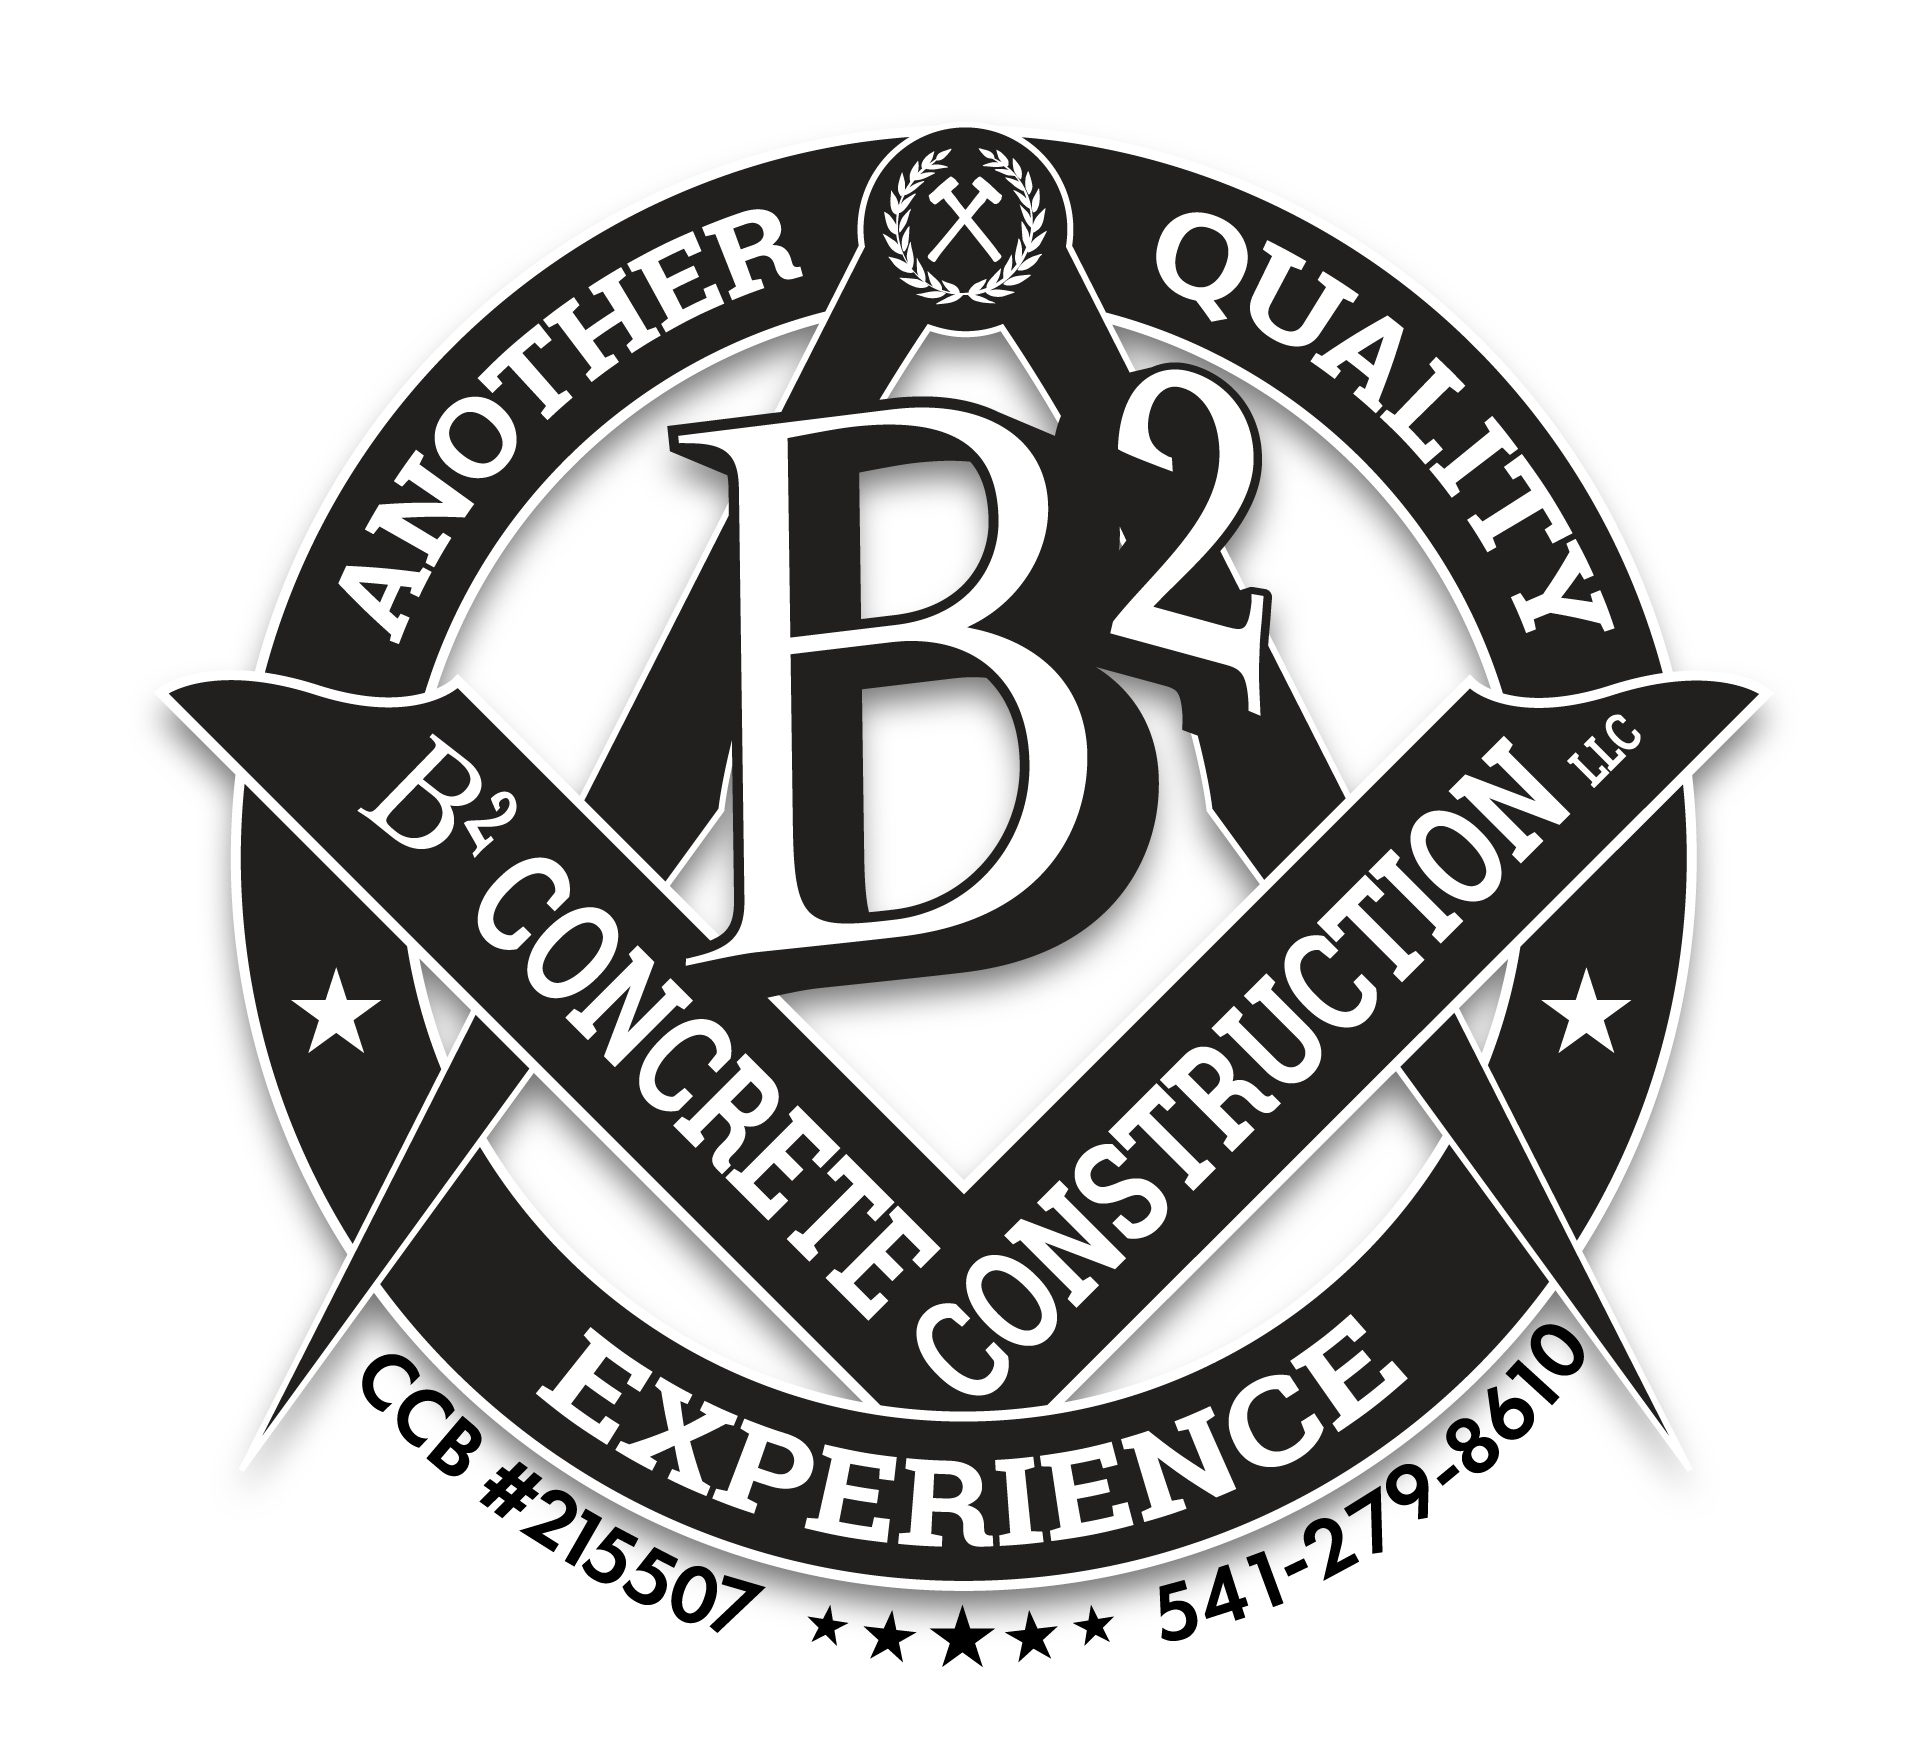 B2 Concrete Construction LLC | Better Business Bureau® Profile